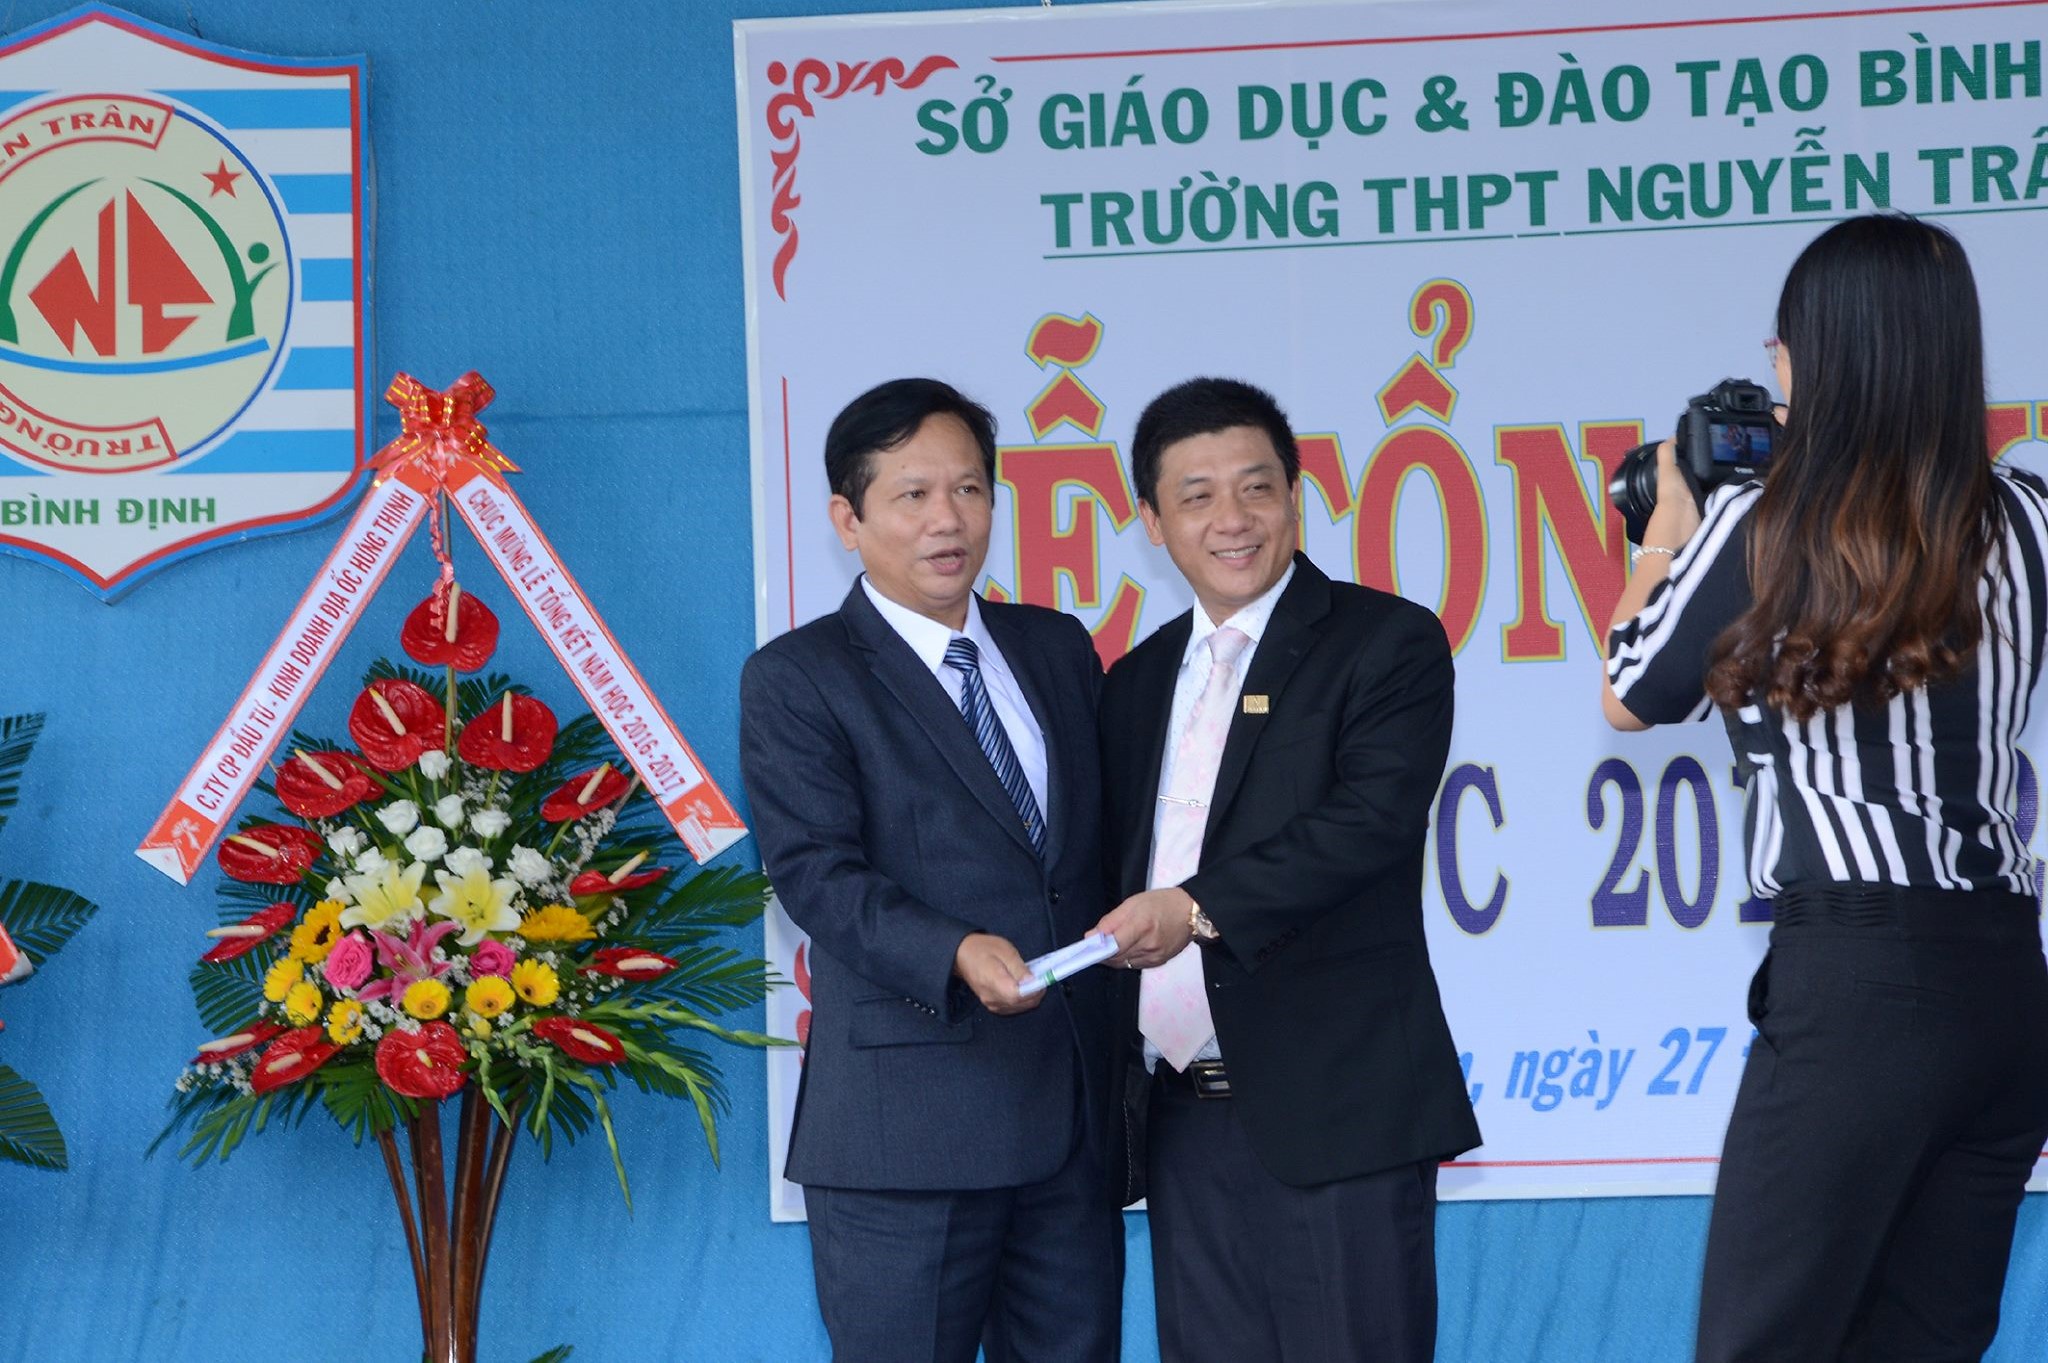 Hiệu trưởng nhà trường - Thầy Nguyễn Văn Thọ ghi nhận sự đóng góp của Cựu giáo viên và Cựu học sinh vì sự phát triển chung của nhà trường